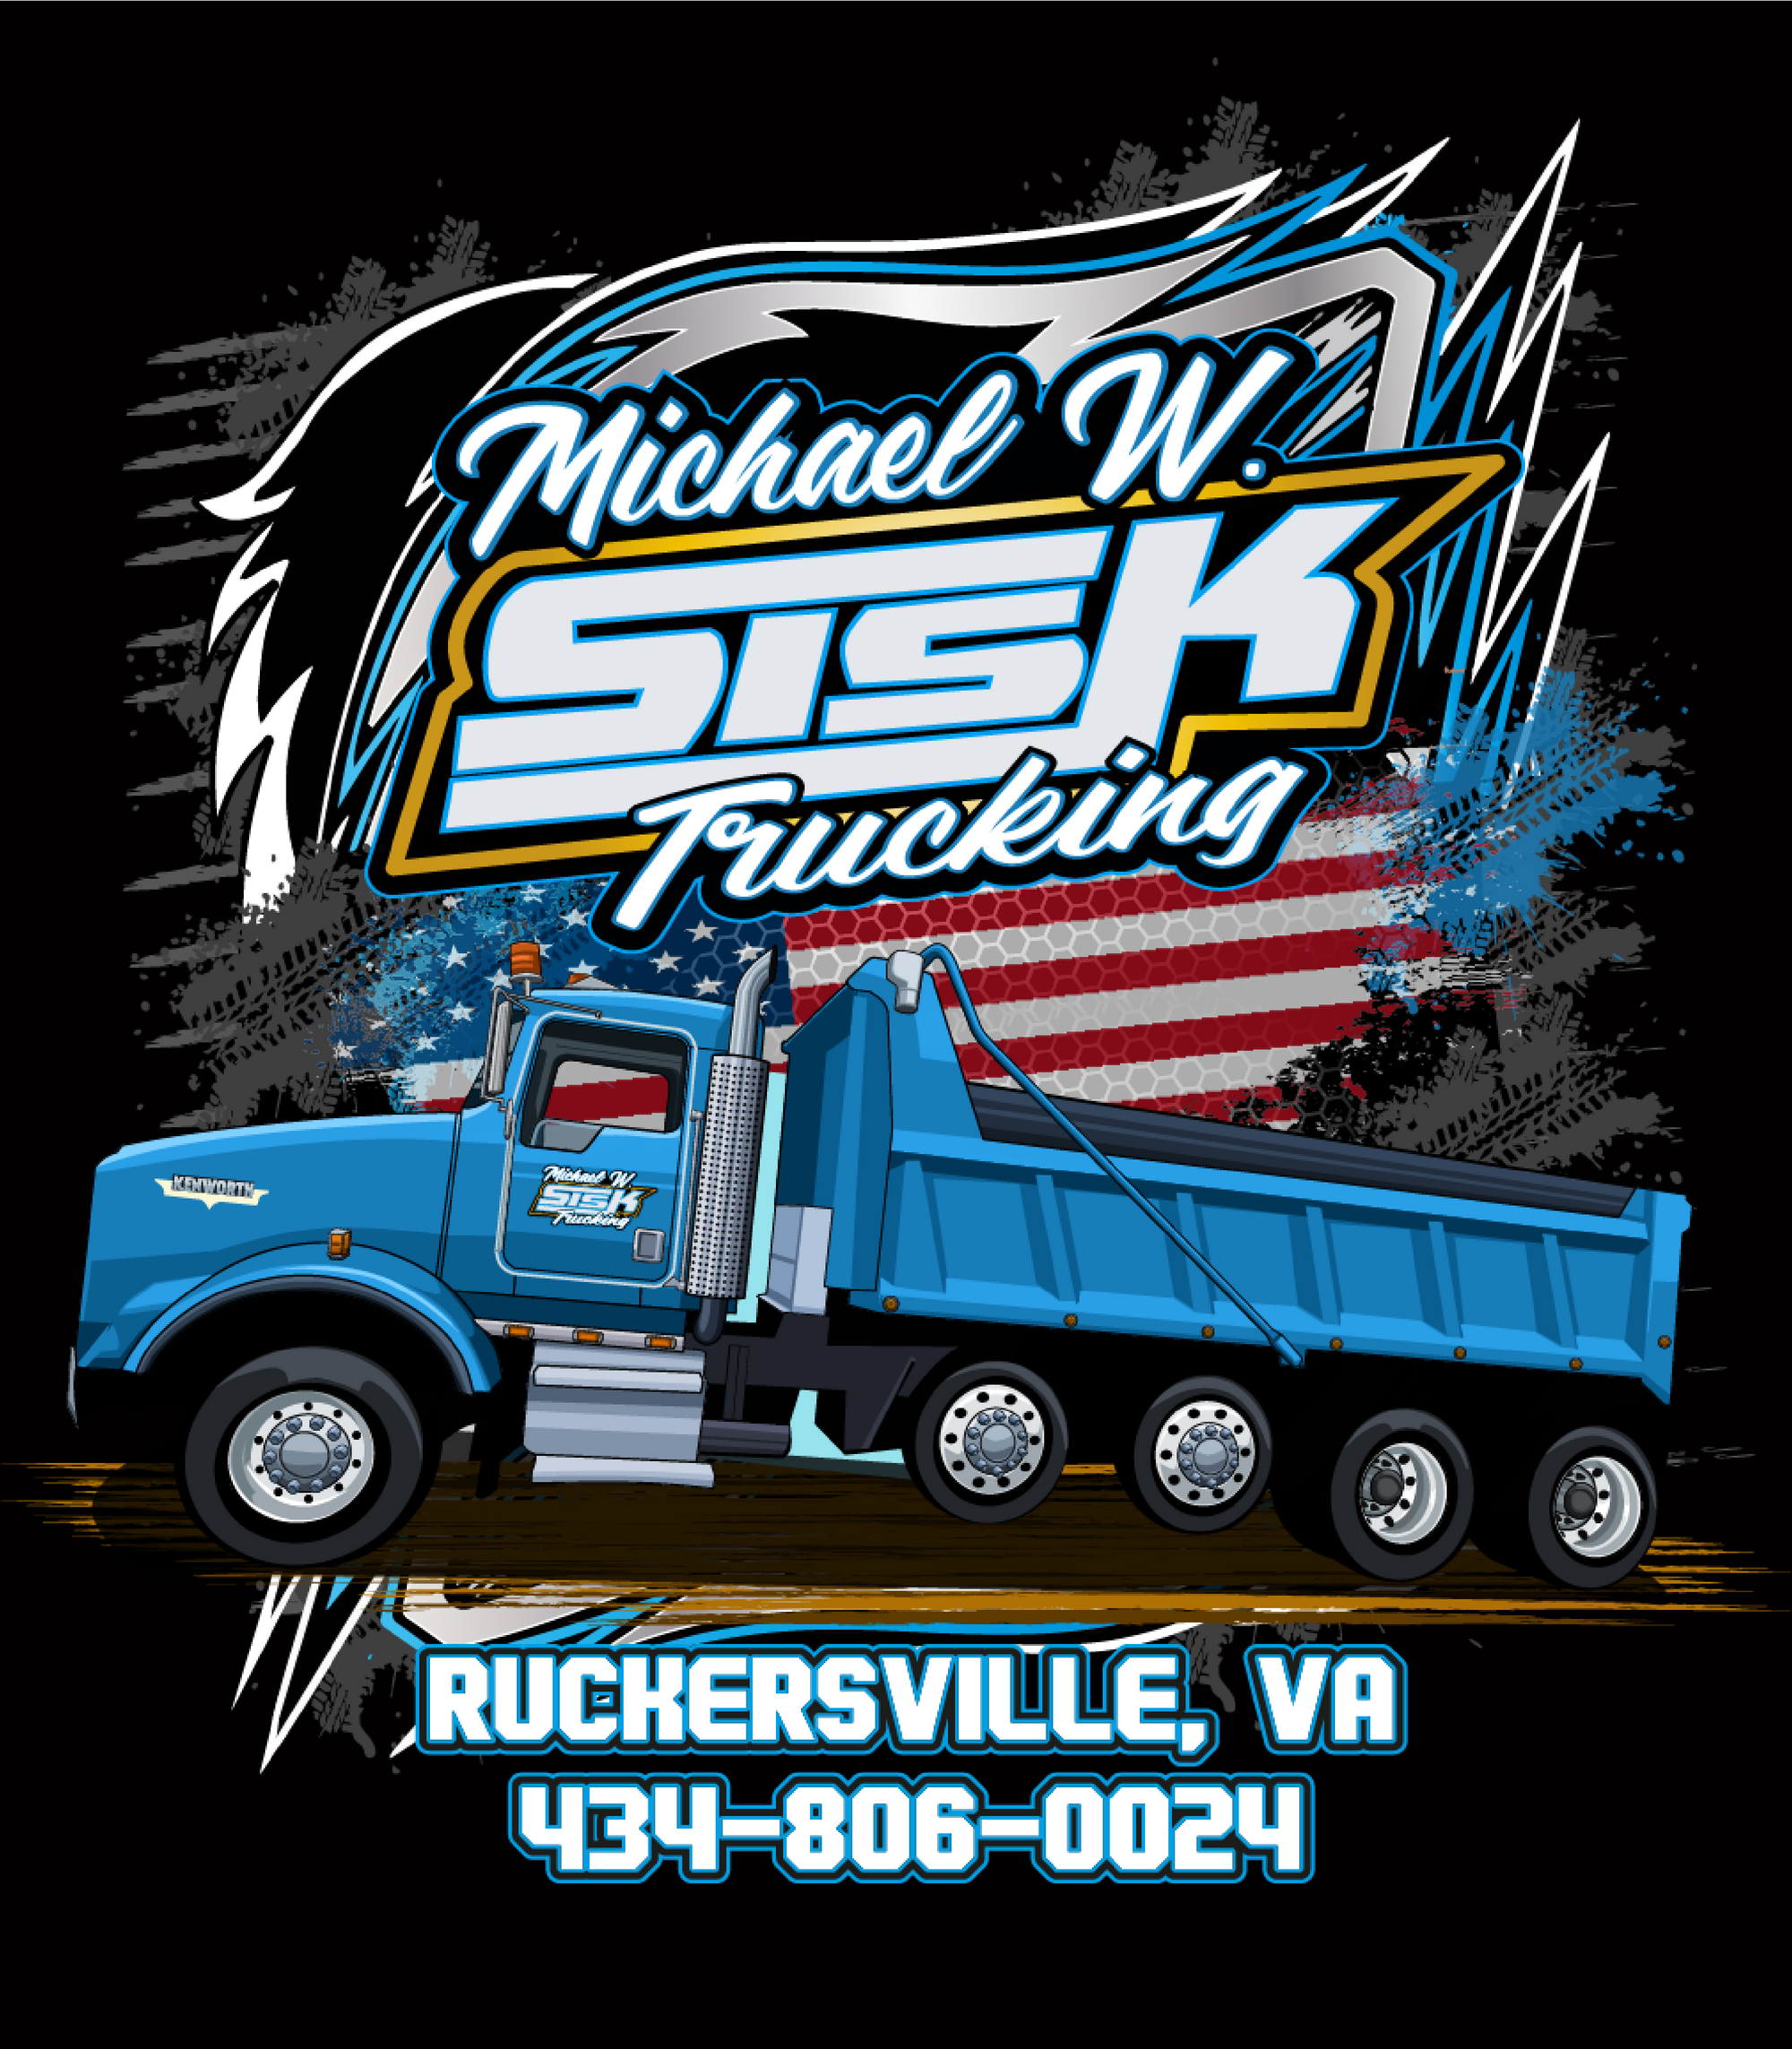 Michael Sisk Trucking